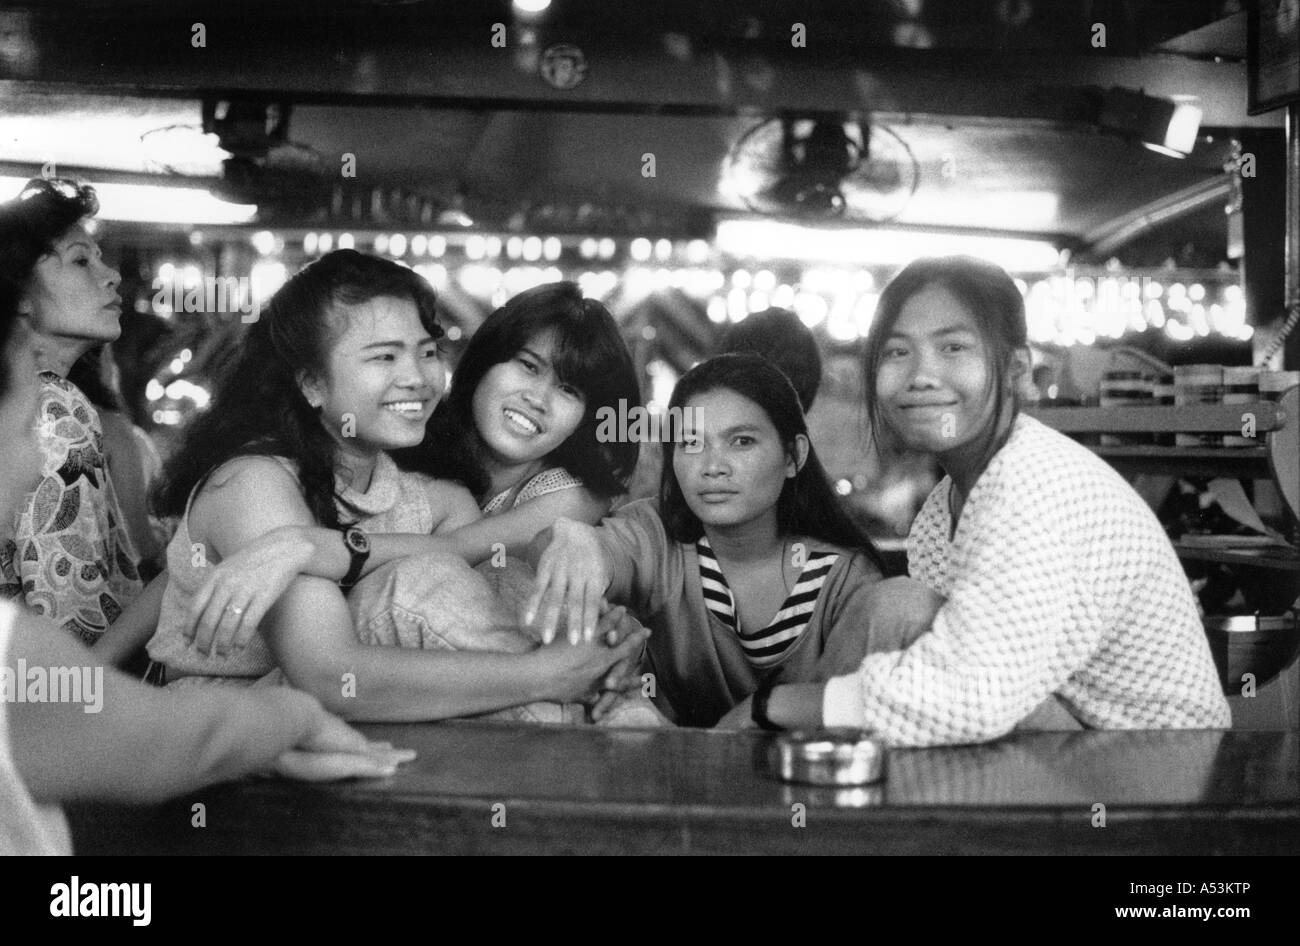 Painet ha1318 noir et blanc femmes entraîneuses femelles amis camarades lauging bw pattaya thailande pays noir-blanc Banque D'Images